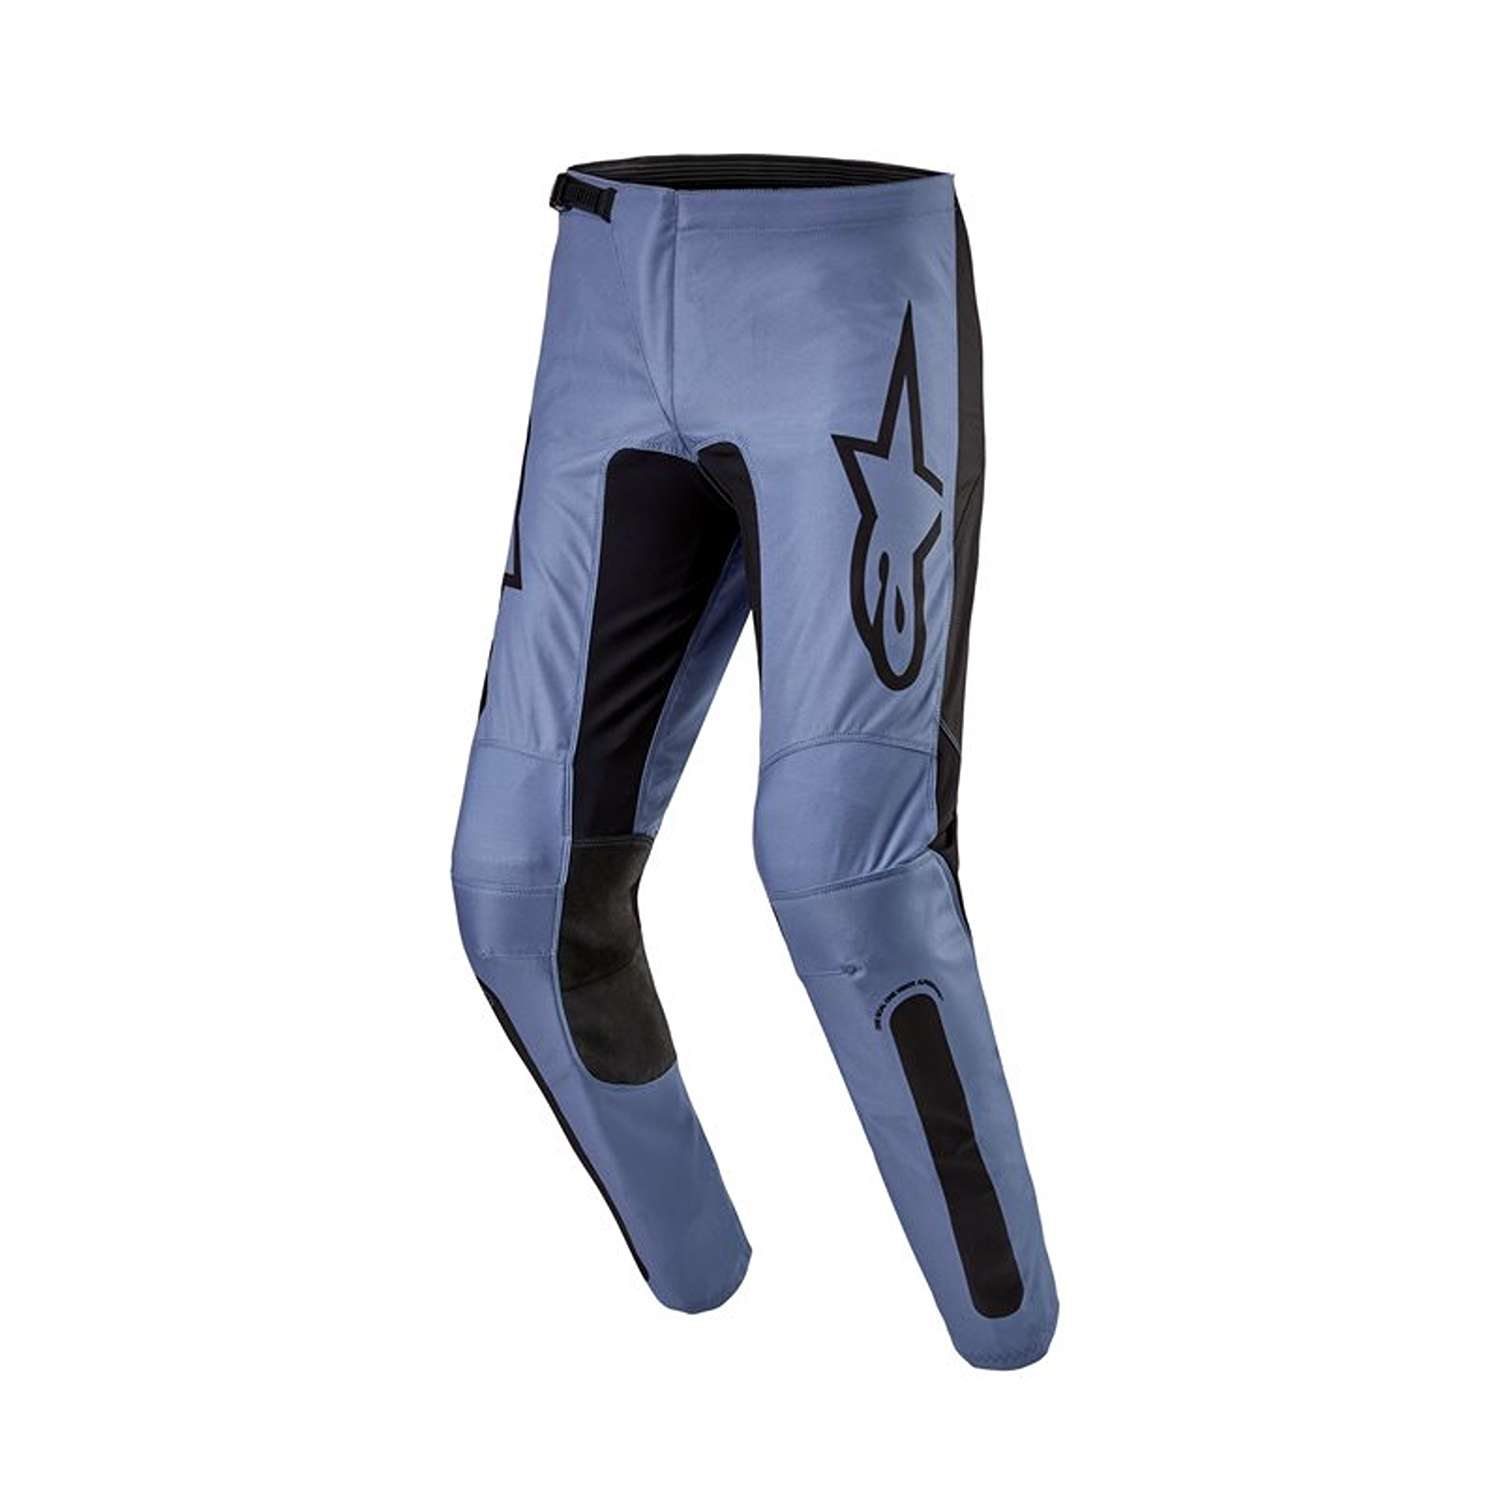 Image of EU Alpinestars Fluid Lurv Pants Light Blue Black Taille 30